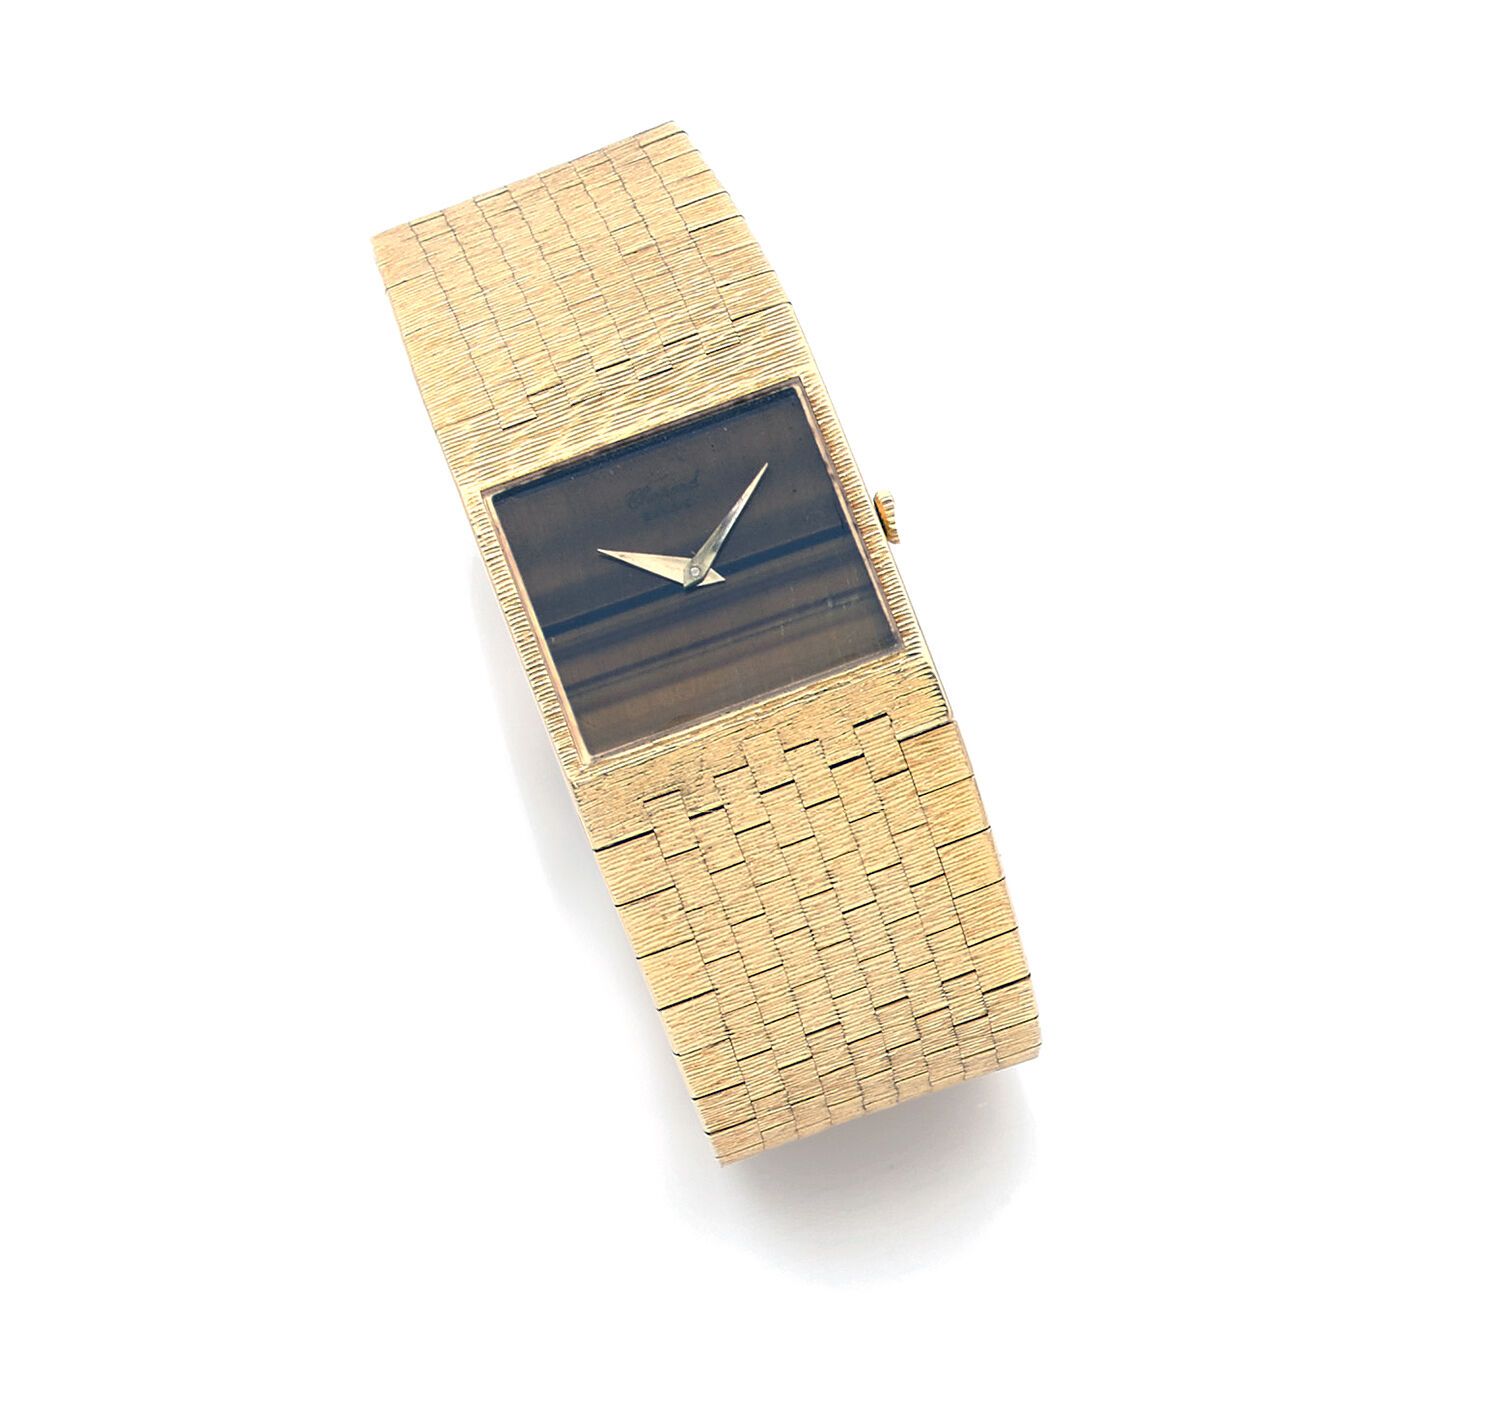 CHOPARD GENÈVE CHOPARD GENEVA
Men's wristwatch in 18K (750 thousandths) gold, ci&hellip;